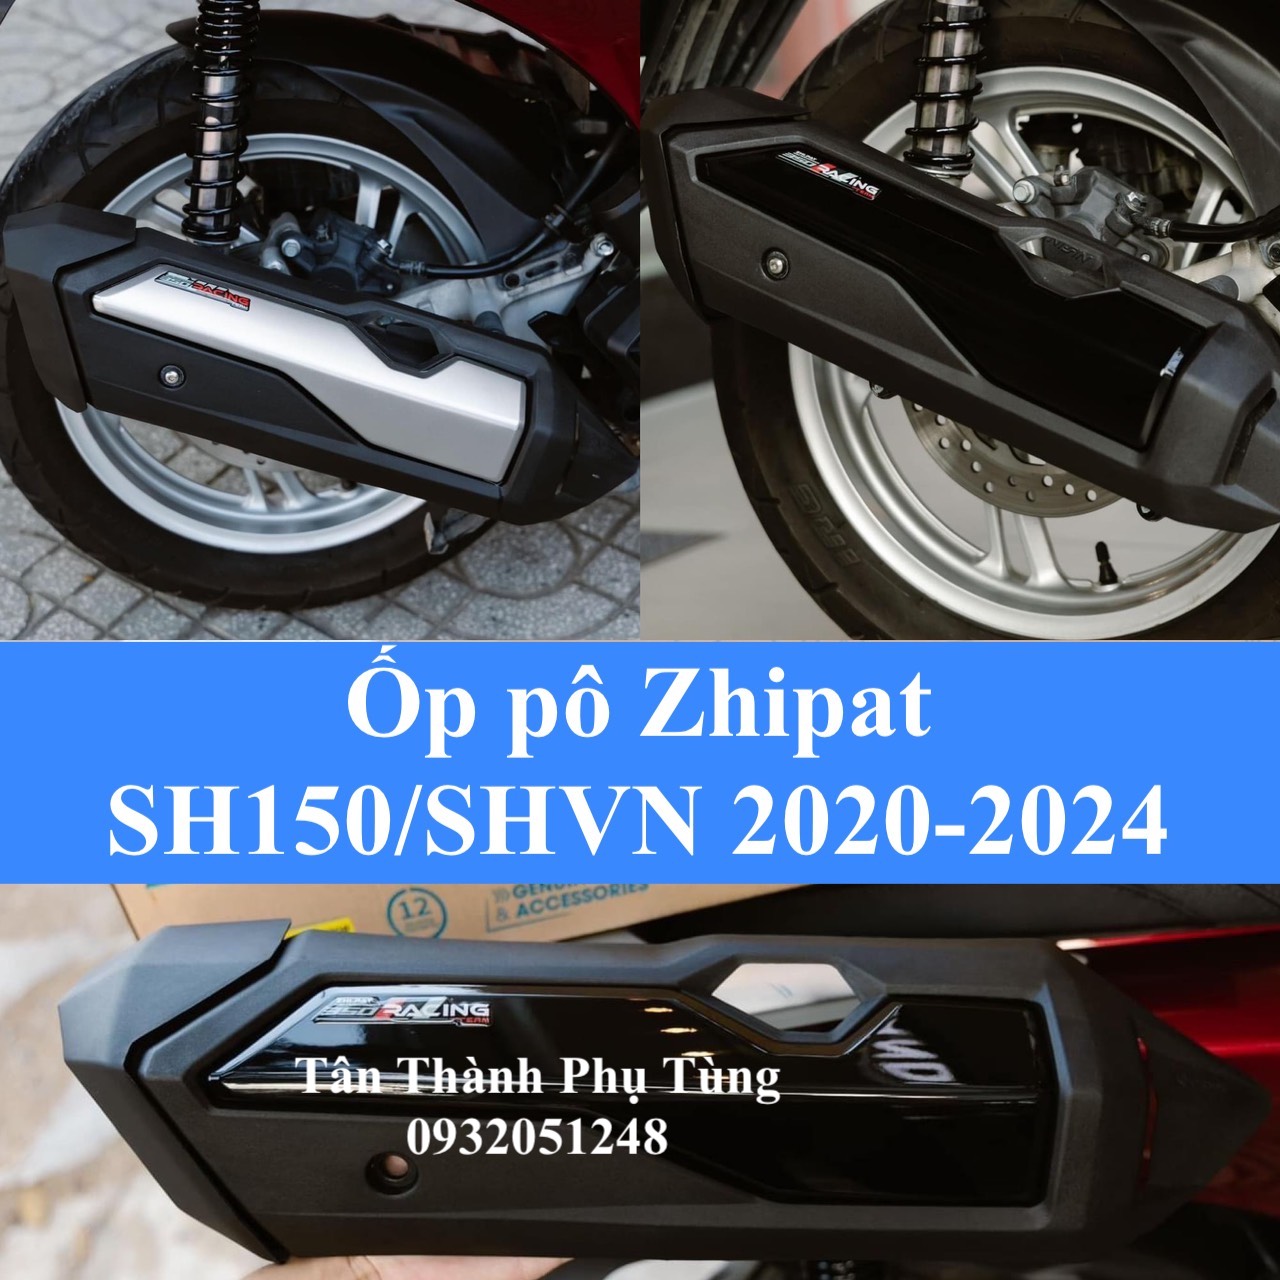 Ốp pô Zhipat SH 150 SHVN 2020-2024 gắn như zin kiểu ADV 350  hàng chính